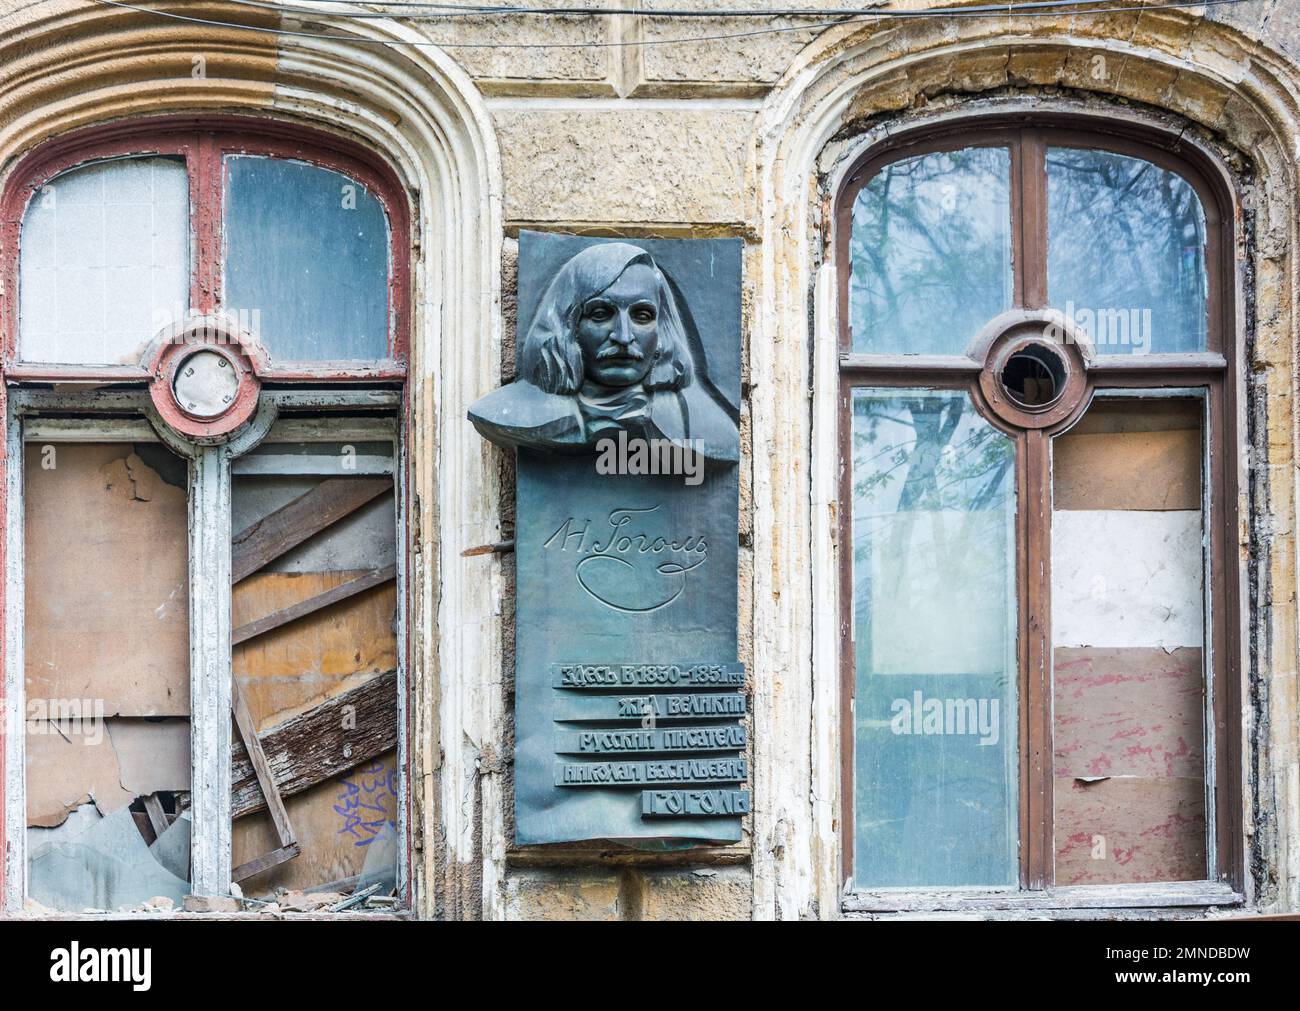 Odessa, Ucraina - Apr 29, 2019: Nikolai Vasilyevich Gogol, il grande scrittore visse in questa casa. Targa commemorativa su un edificio a Odessa, Ucraina Foto Stock